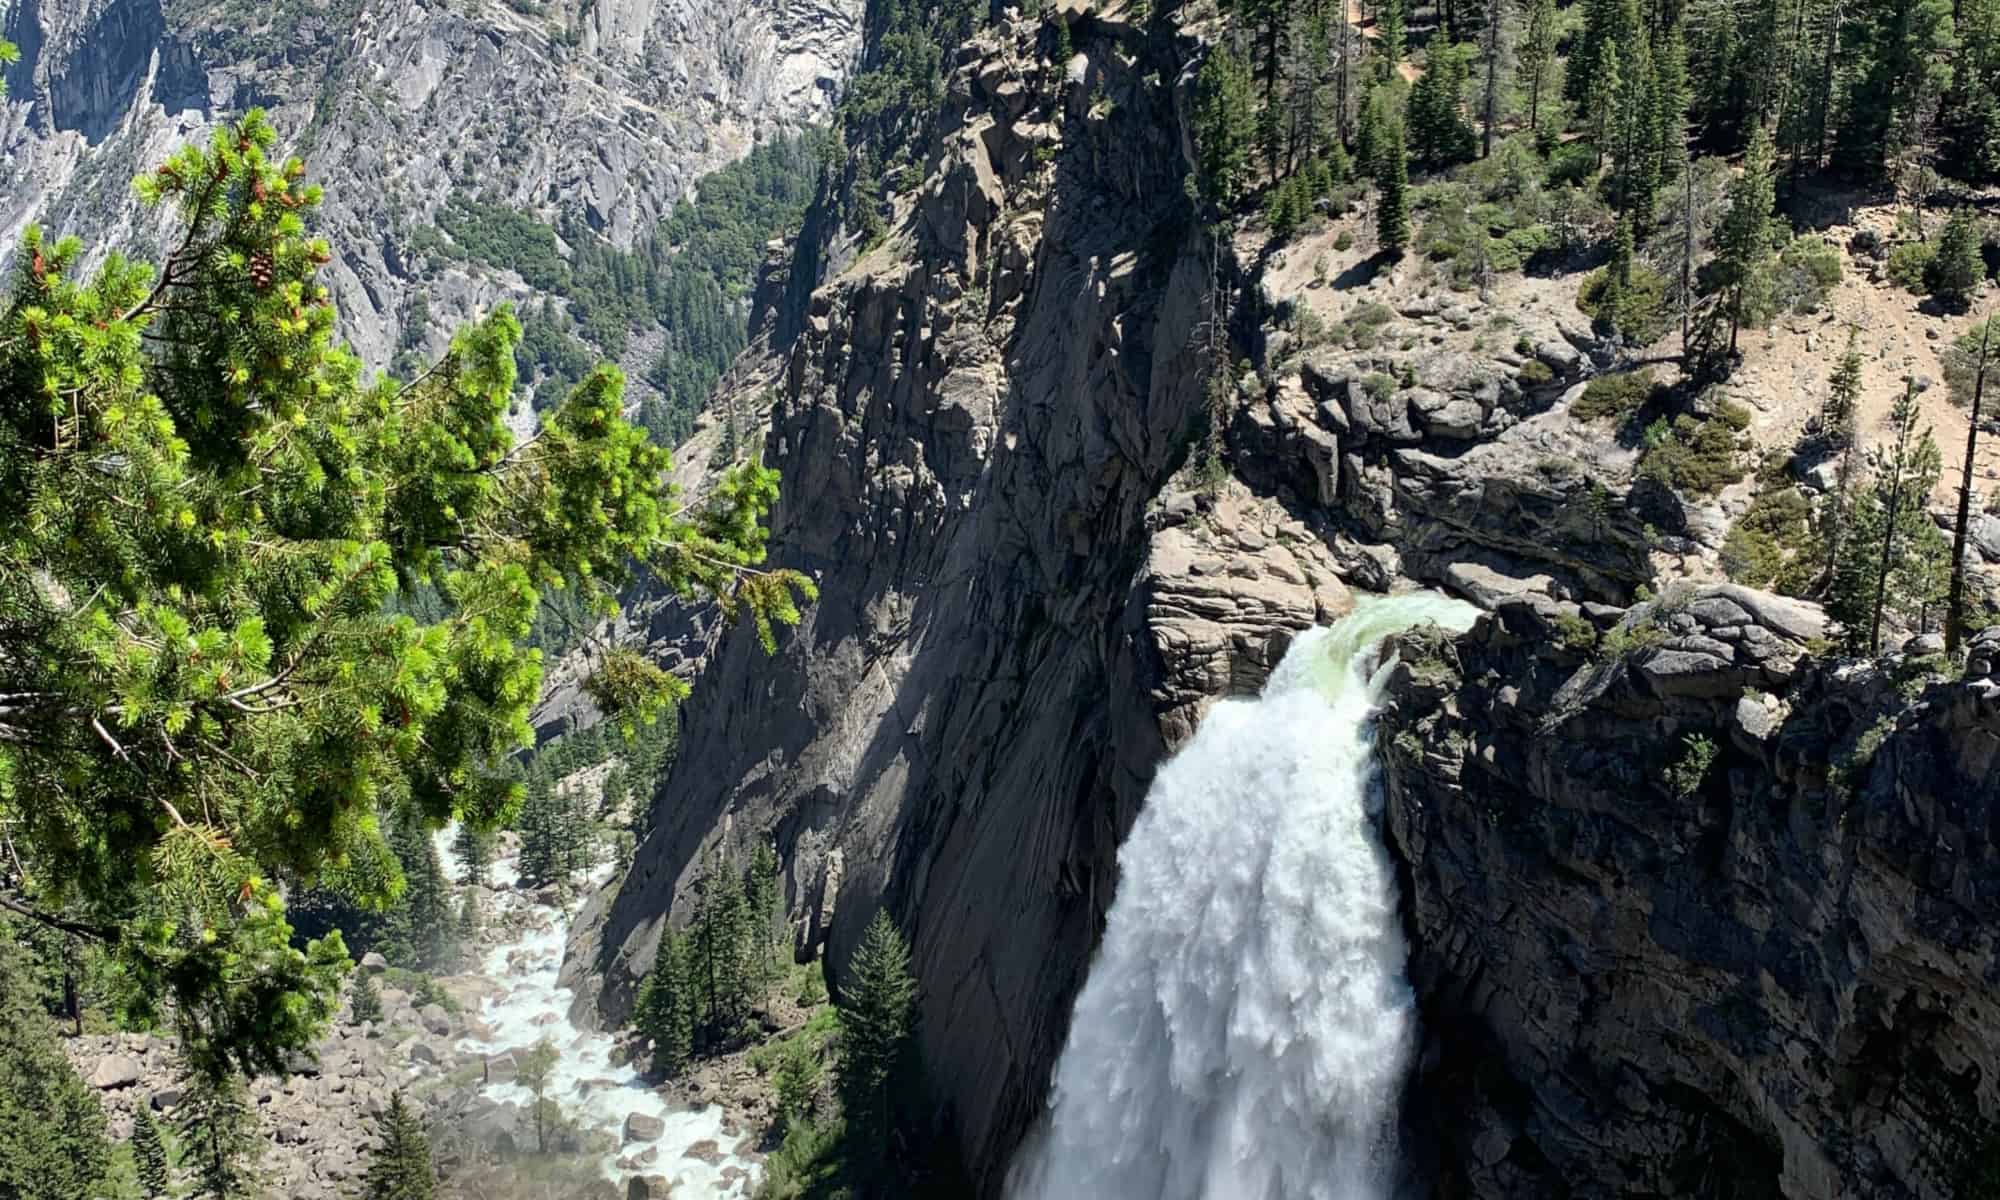 Illilouette Falls